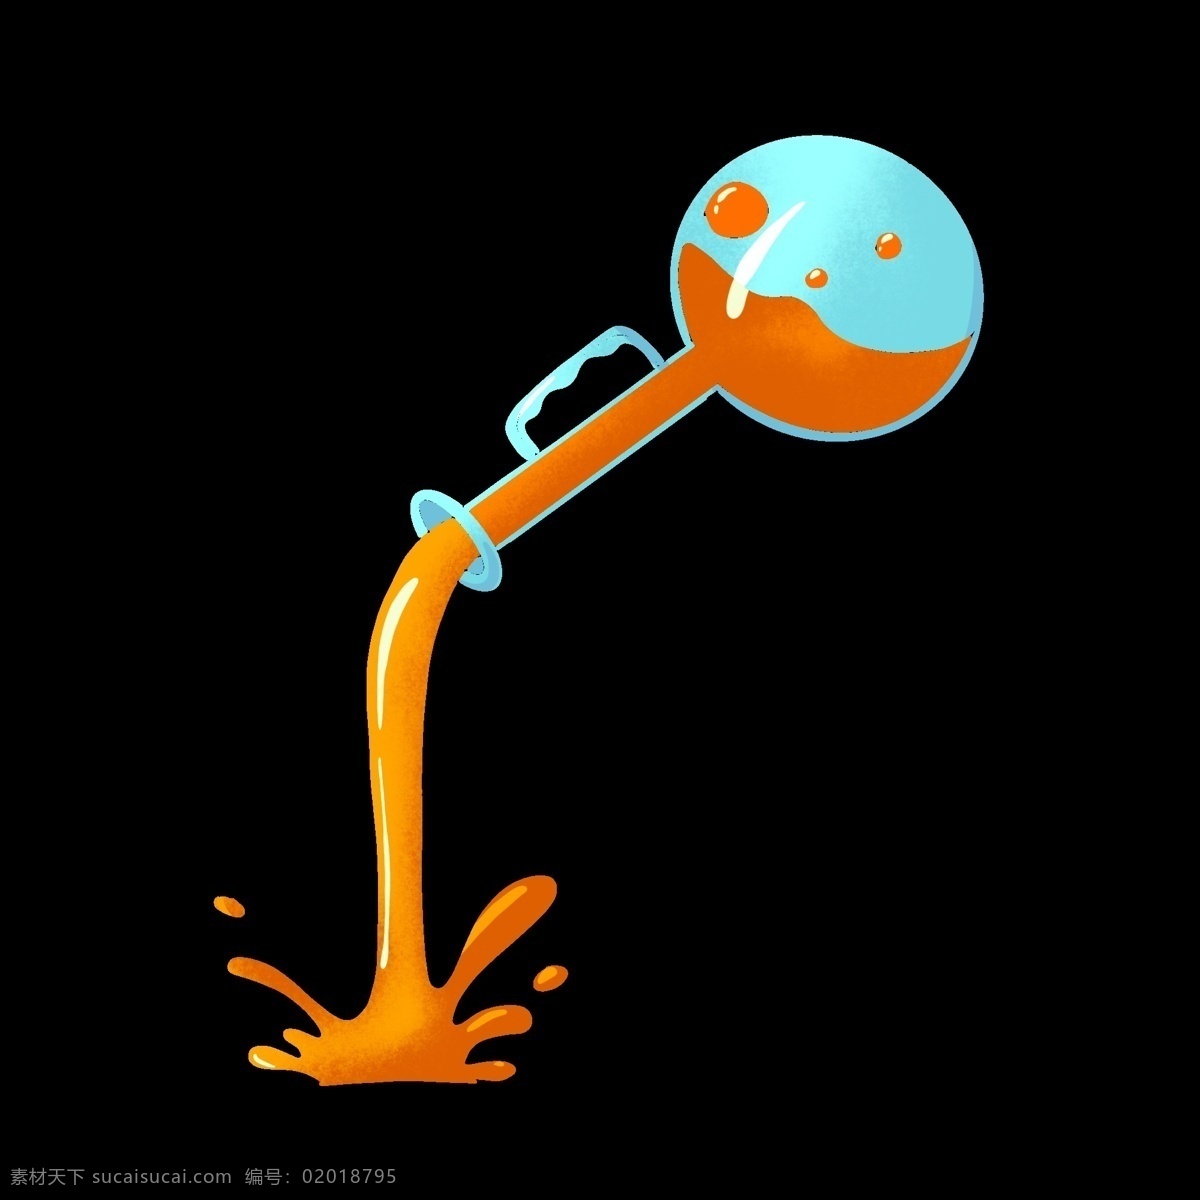 化学 仪器 瓶子 插画 蓝色的瓶子 卡通插画 化学插画 化学实验 化学仪器 化学器具 橙色的液体